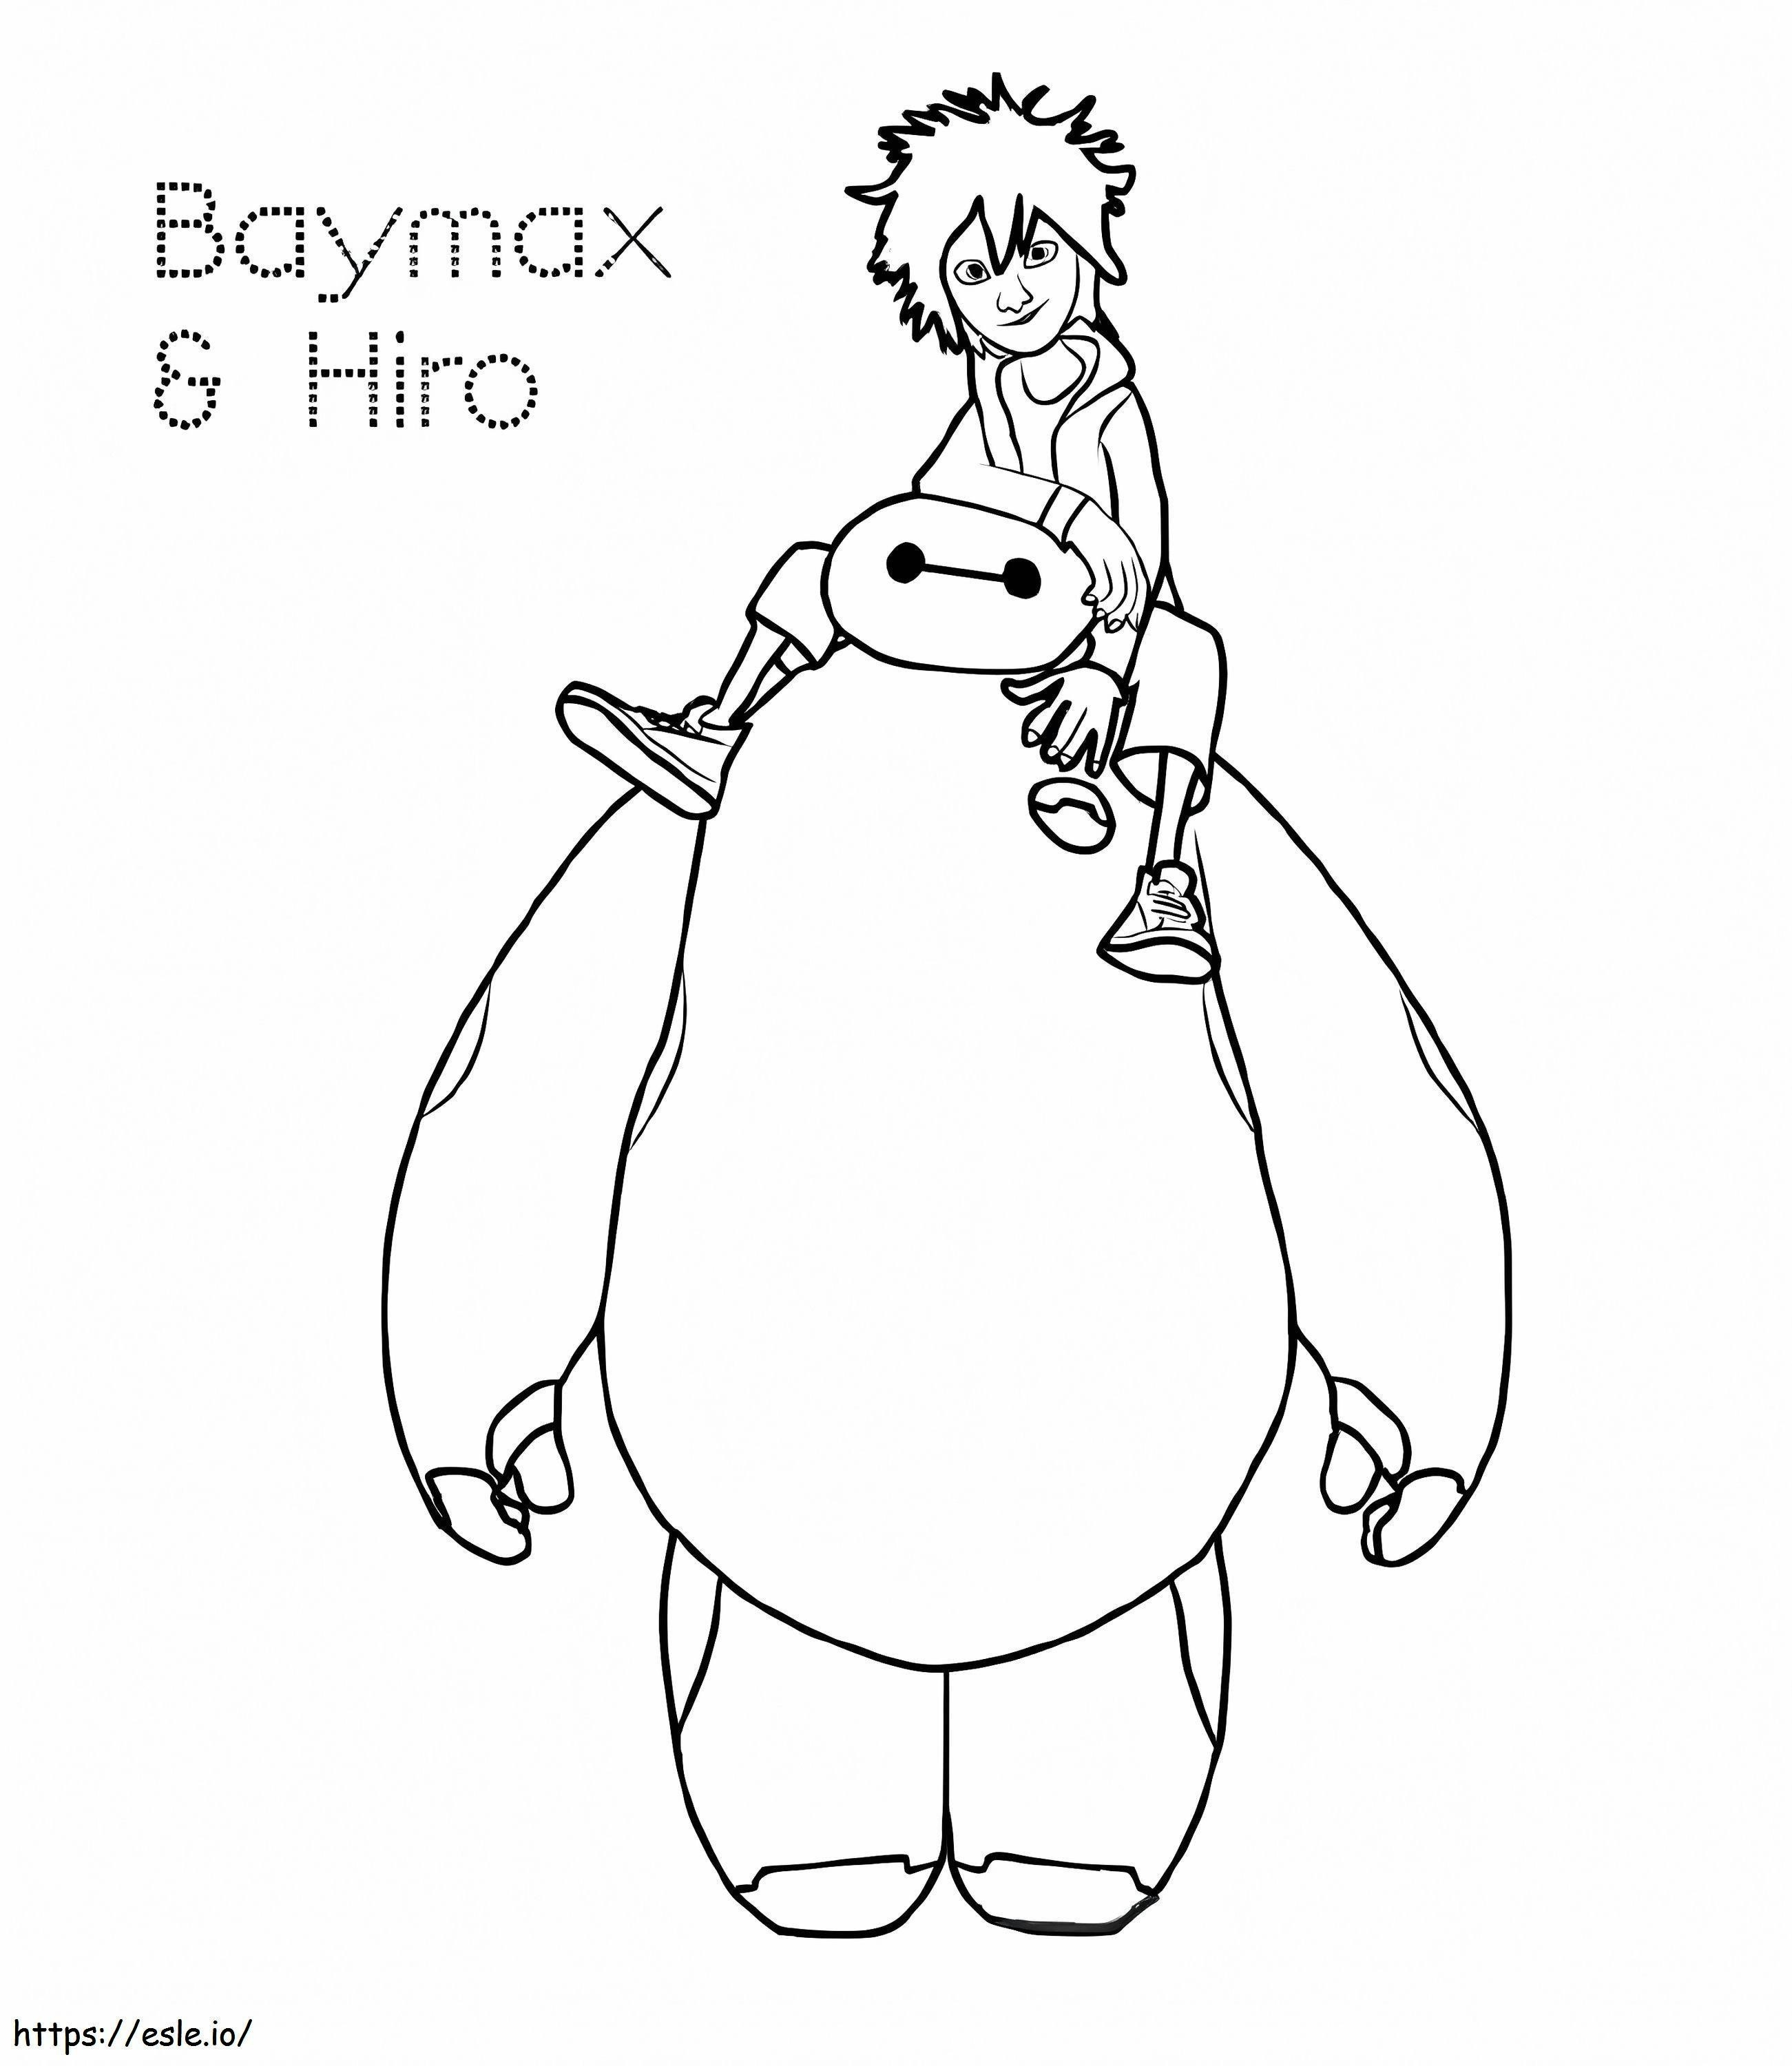 Hiro Y Baymax para colorear